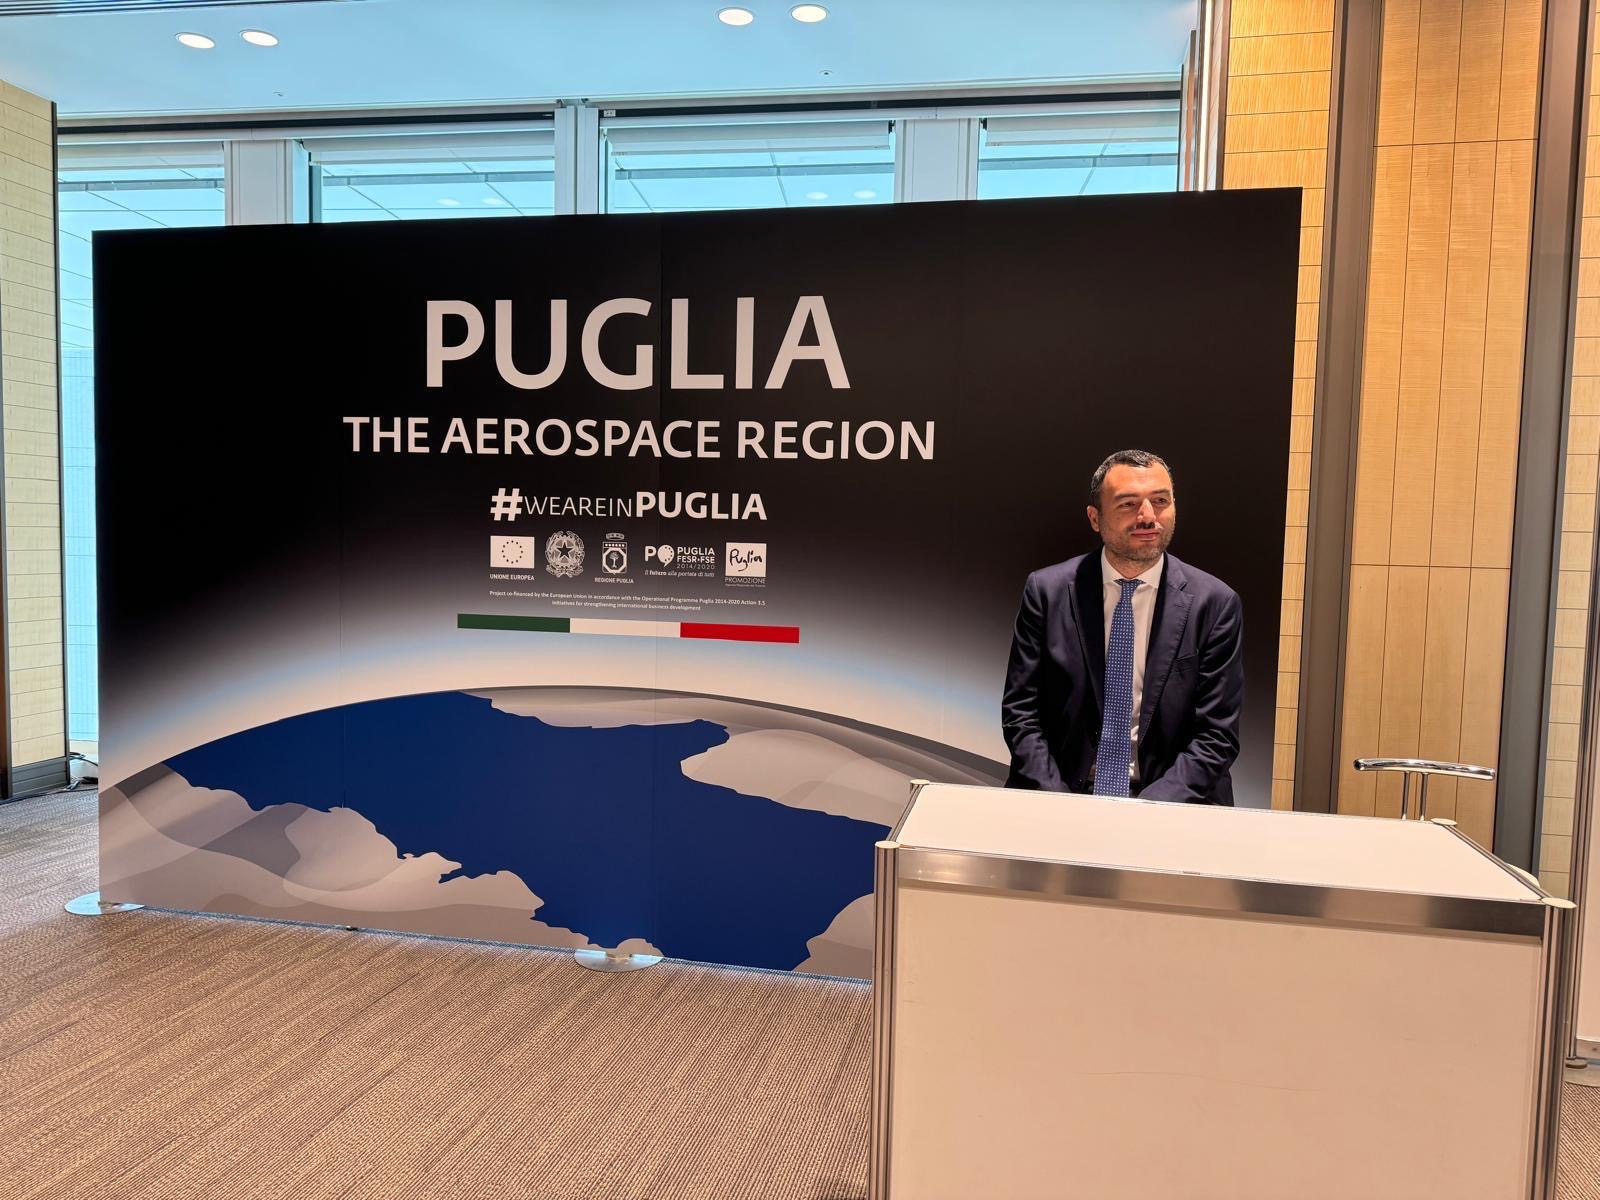 Galleria Space economy: la Puglia sbarca in Giappone - Diapositiva 2 di 3